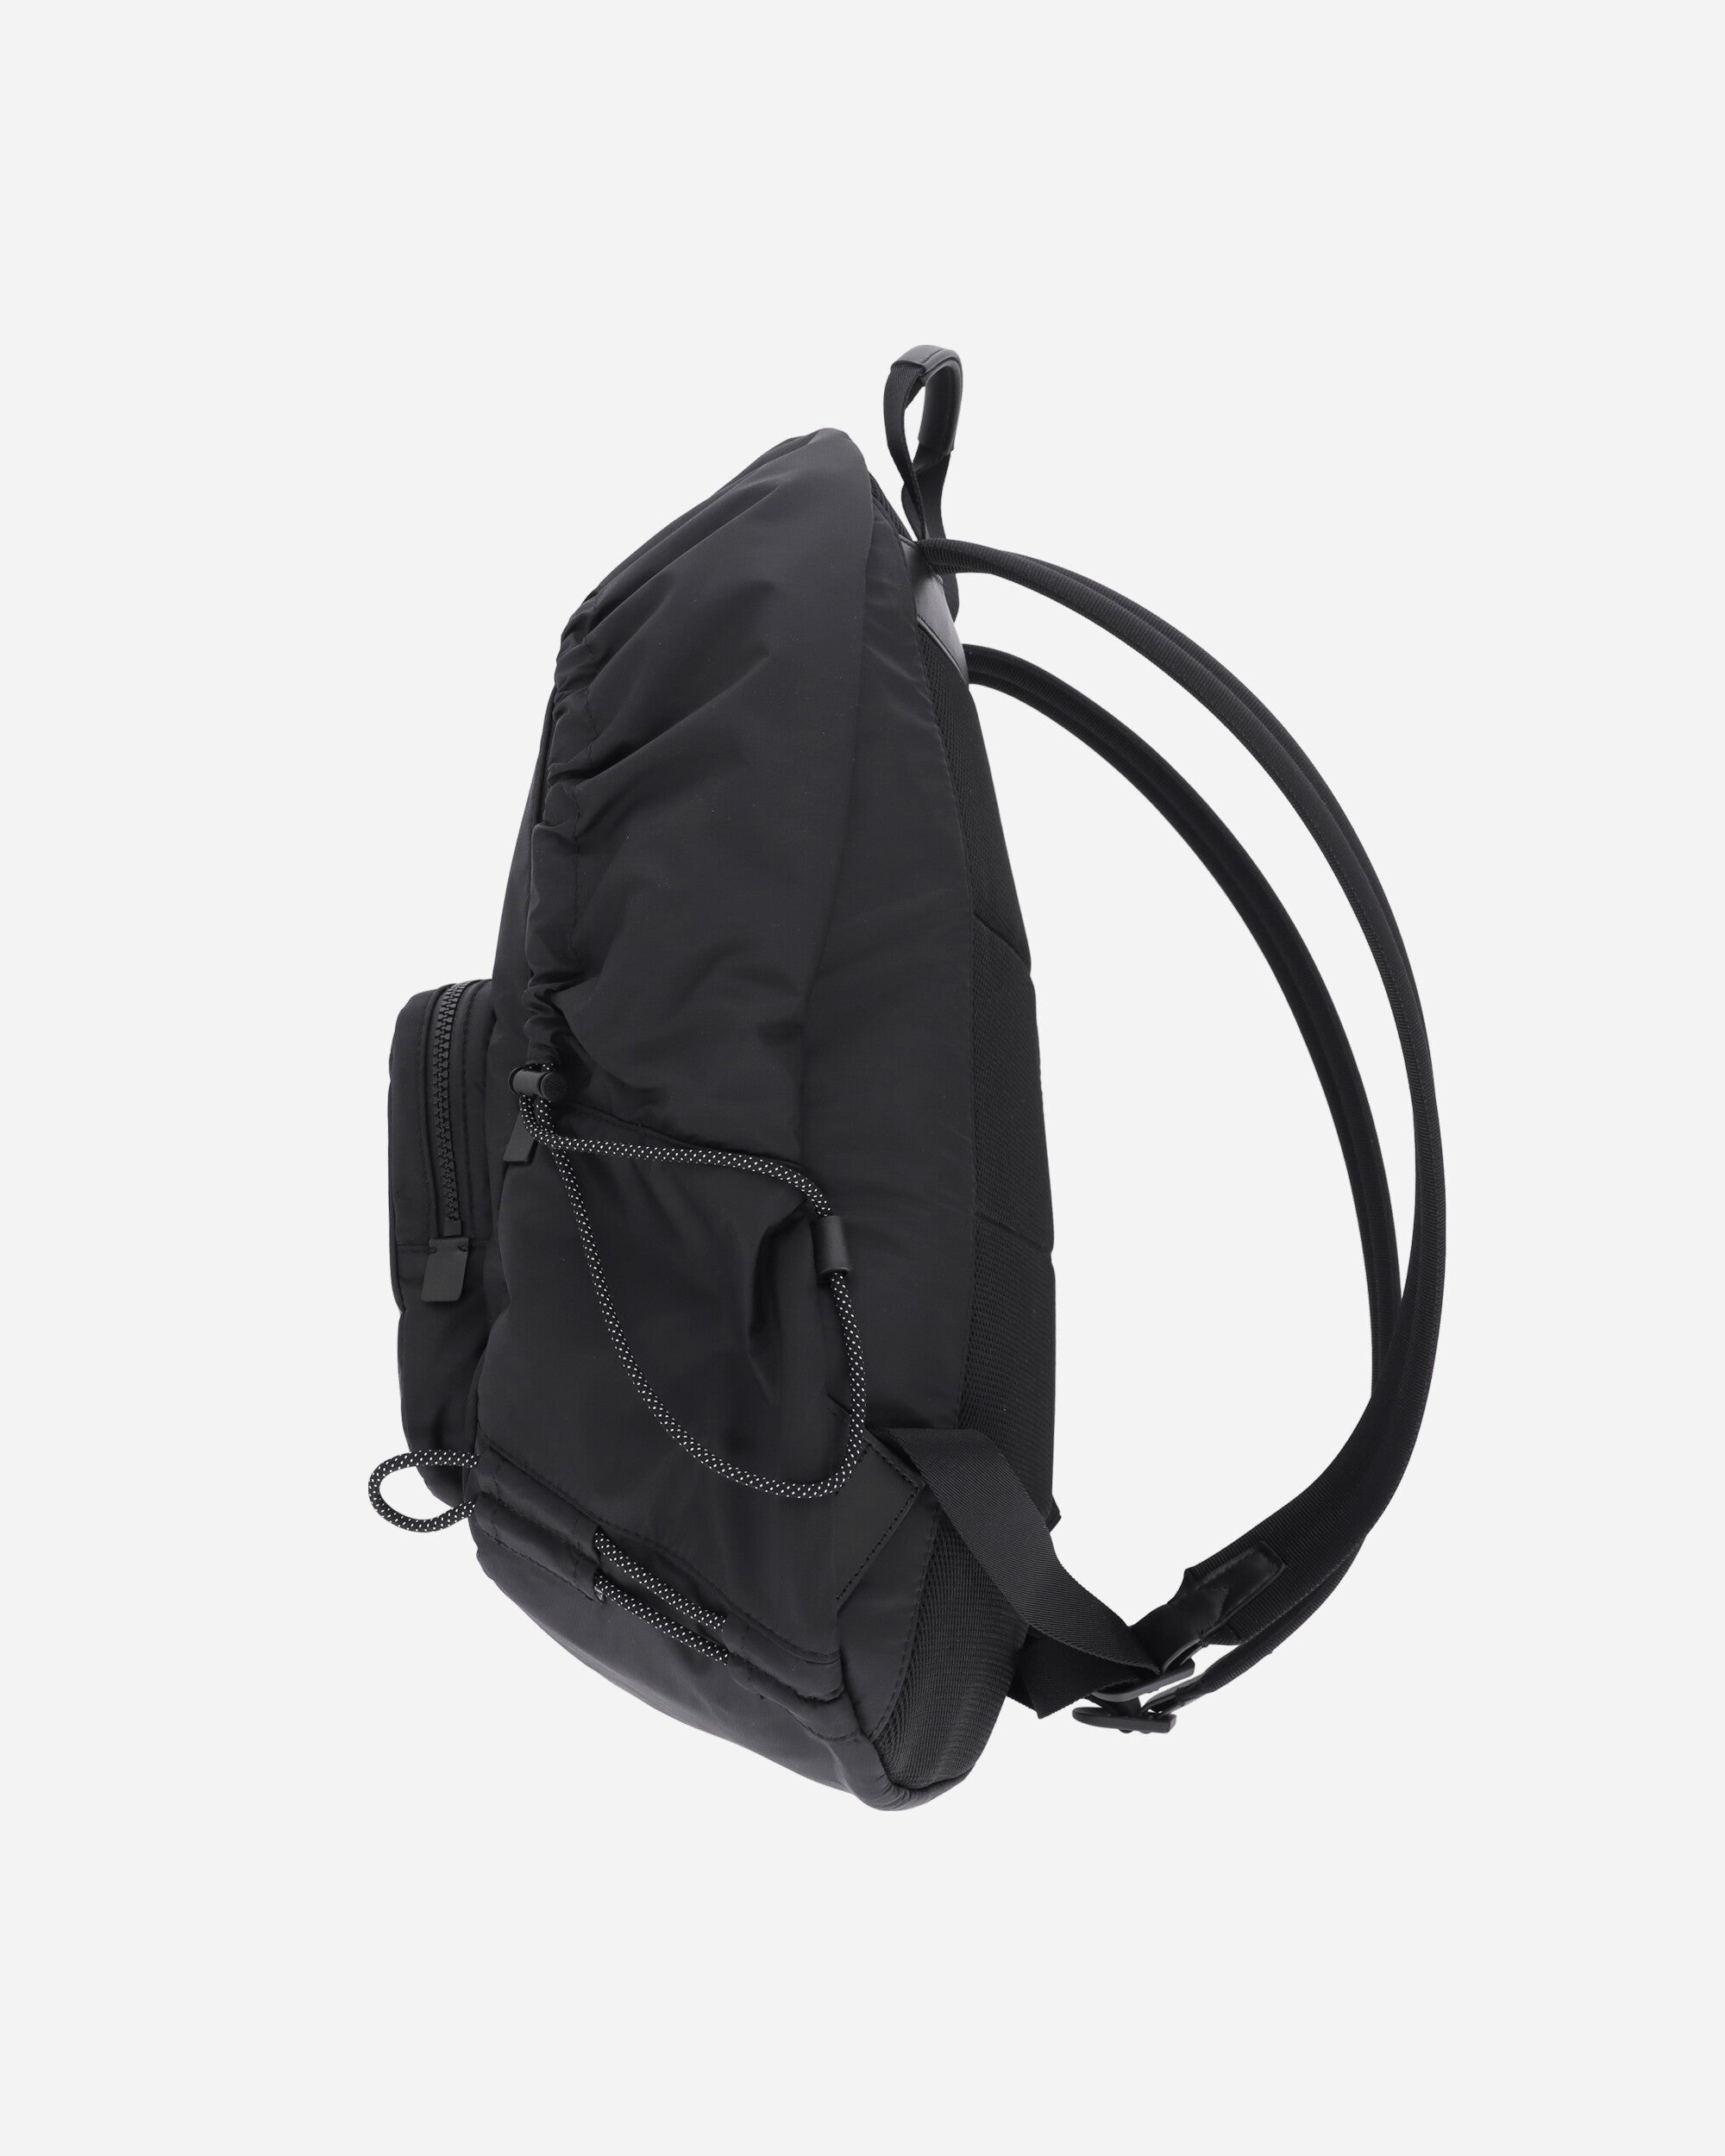 Makaio Backpack Black - 2